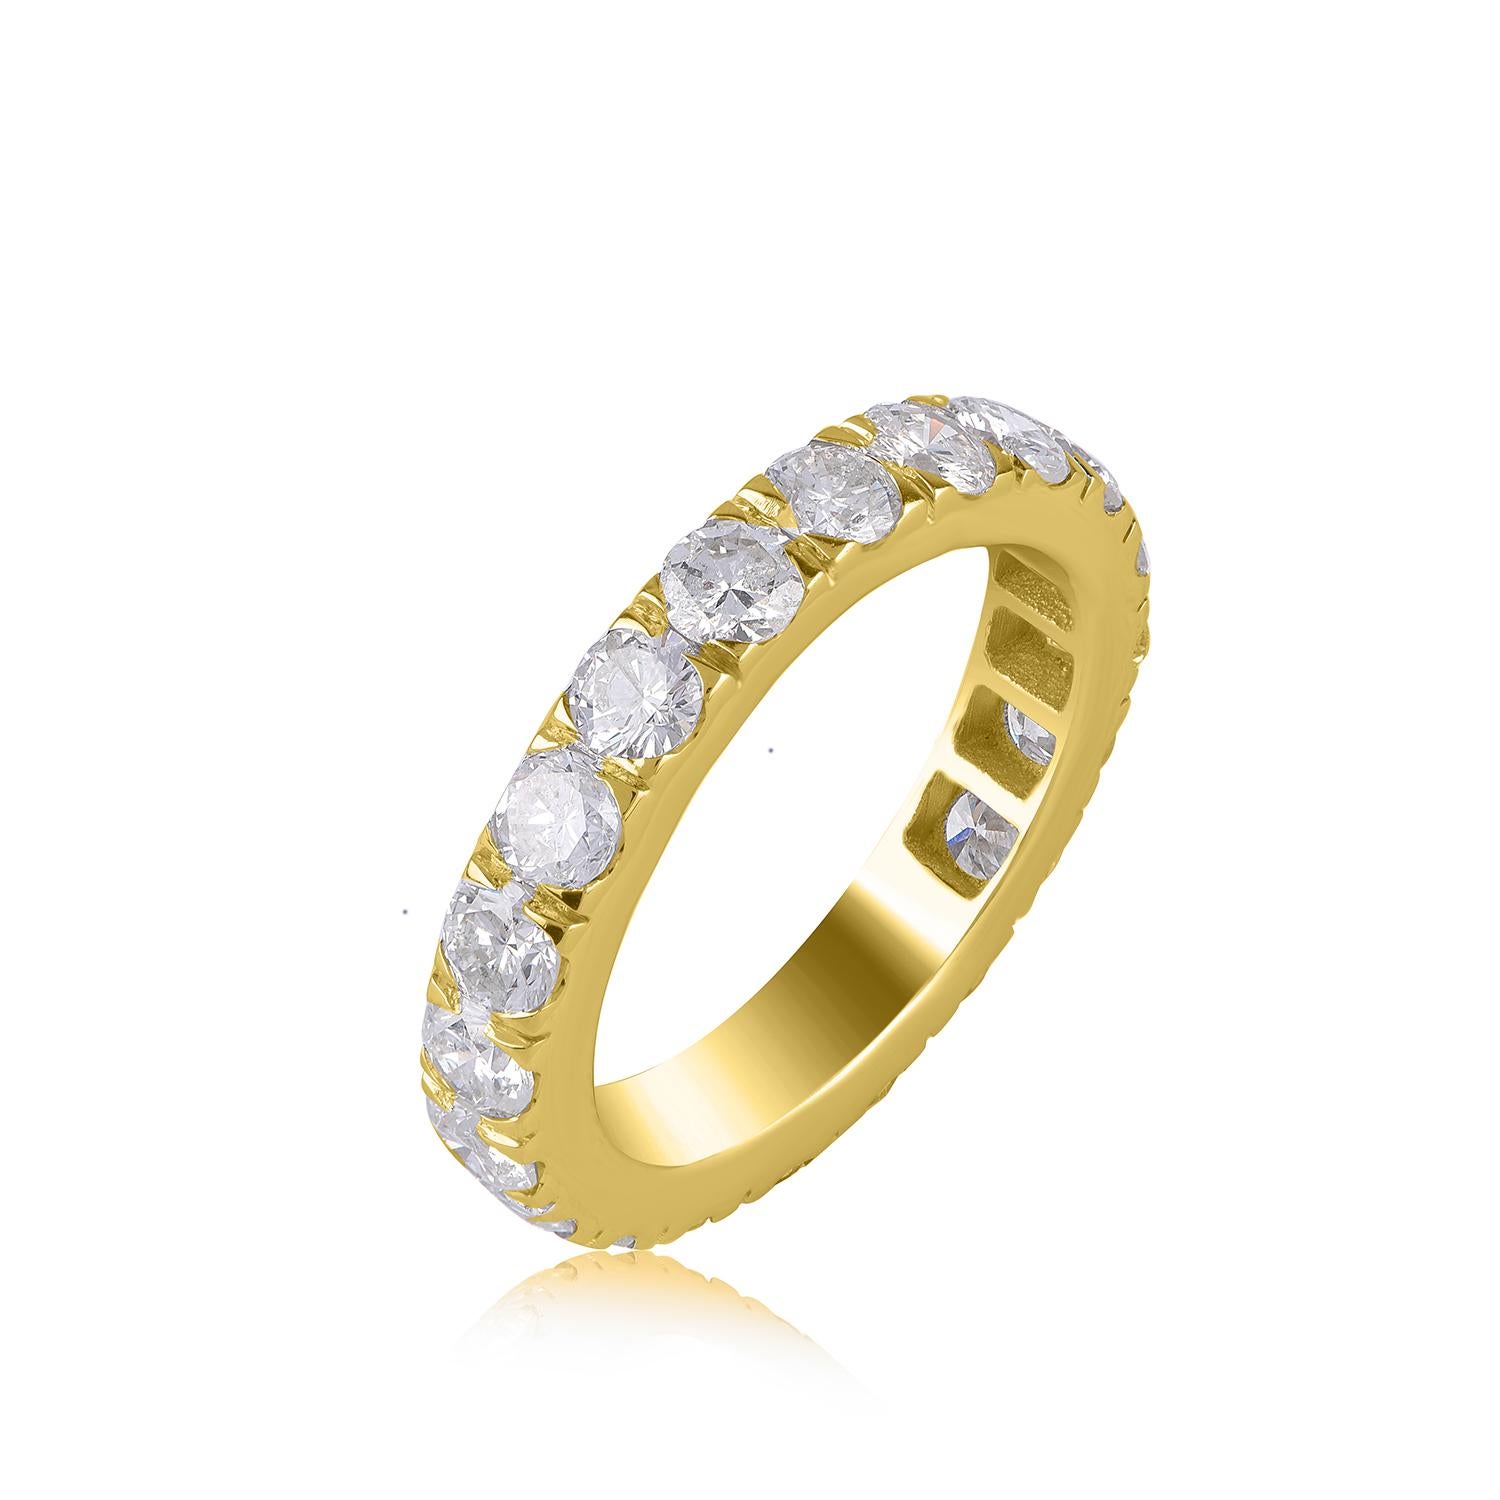 Verleihen Sie Ihrem Look einen Hauch von Eleganz mit diesem diamantenen Verlobungsring. Dieses Diamantband ist mit 20 runden Diamanten in Mikro-Pflaster-Fassung besetzt. Die Diamanten sind in der Farbe H-I und in der Reinheit I1-I2 eingestuft.